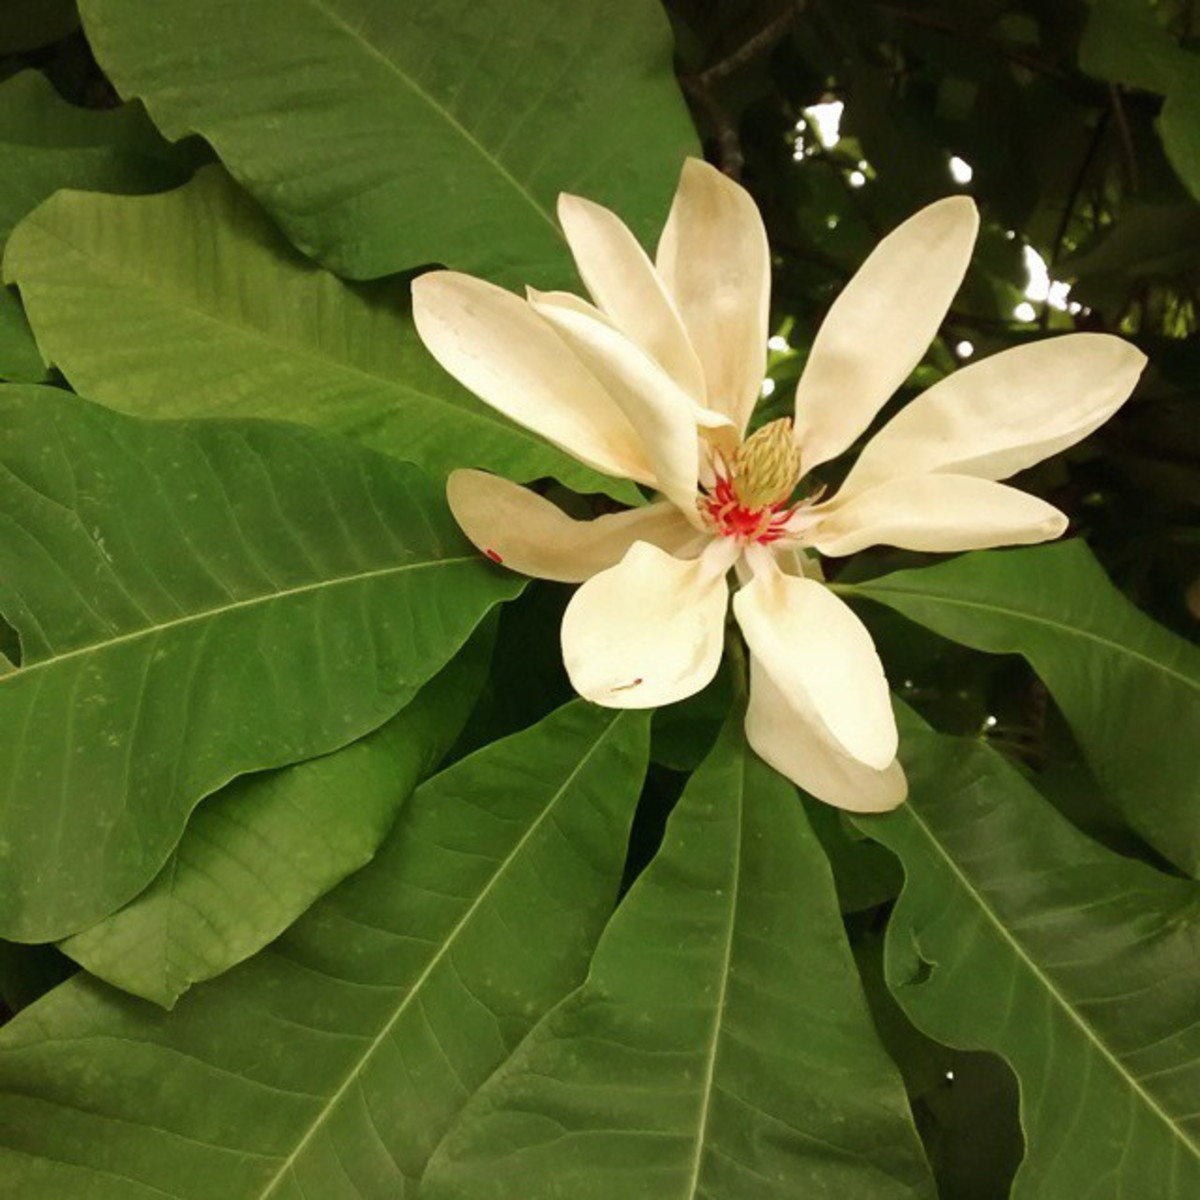 Umbrella magnolia tree flower